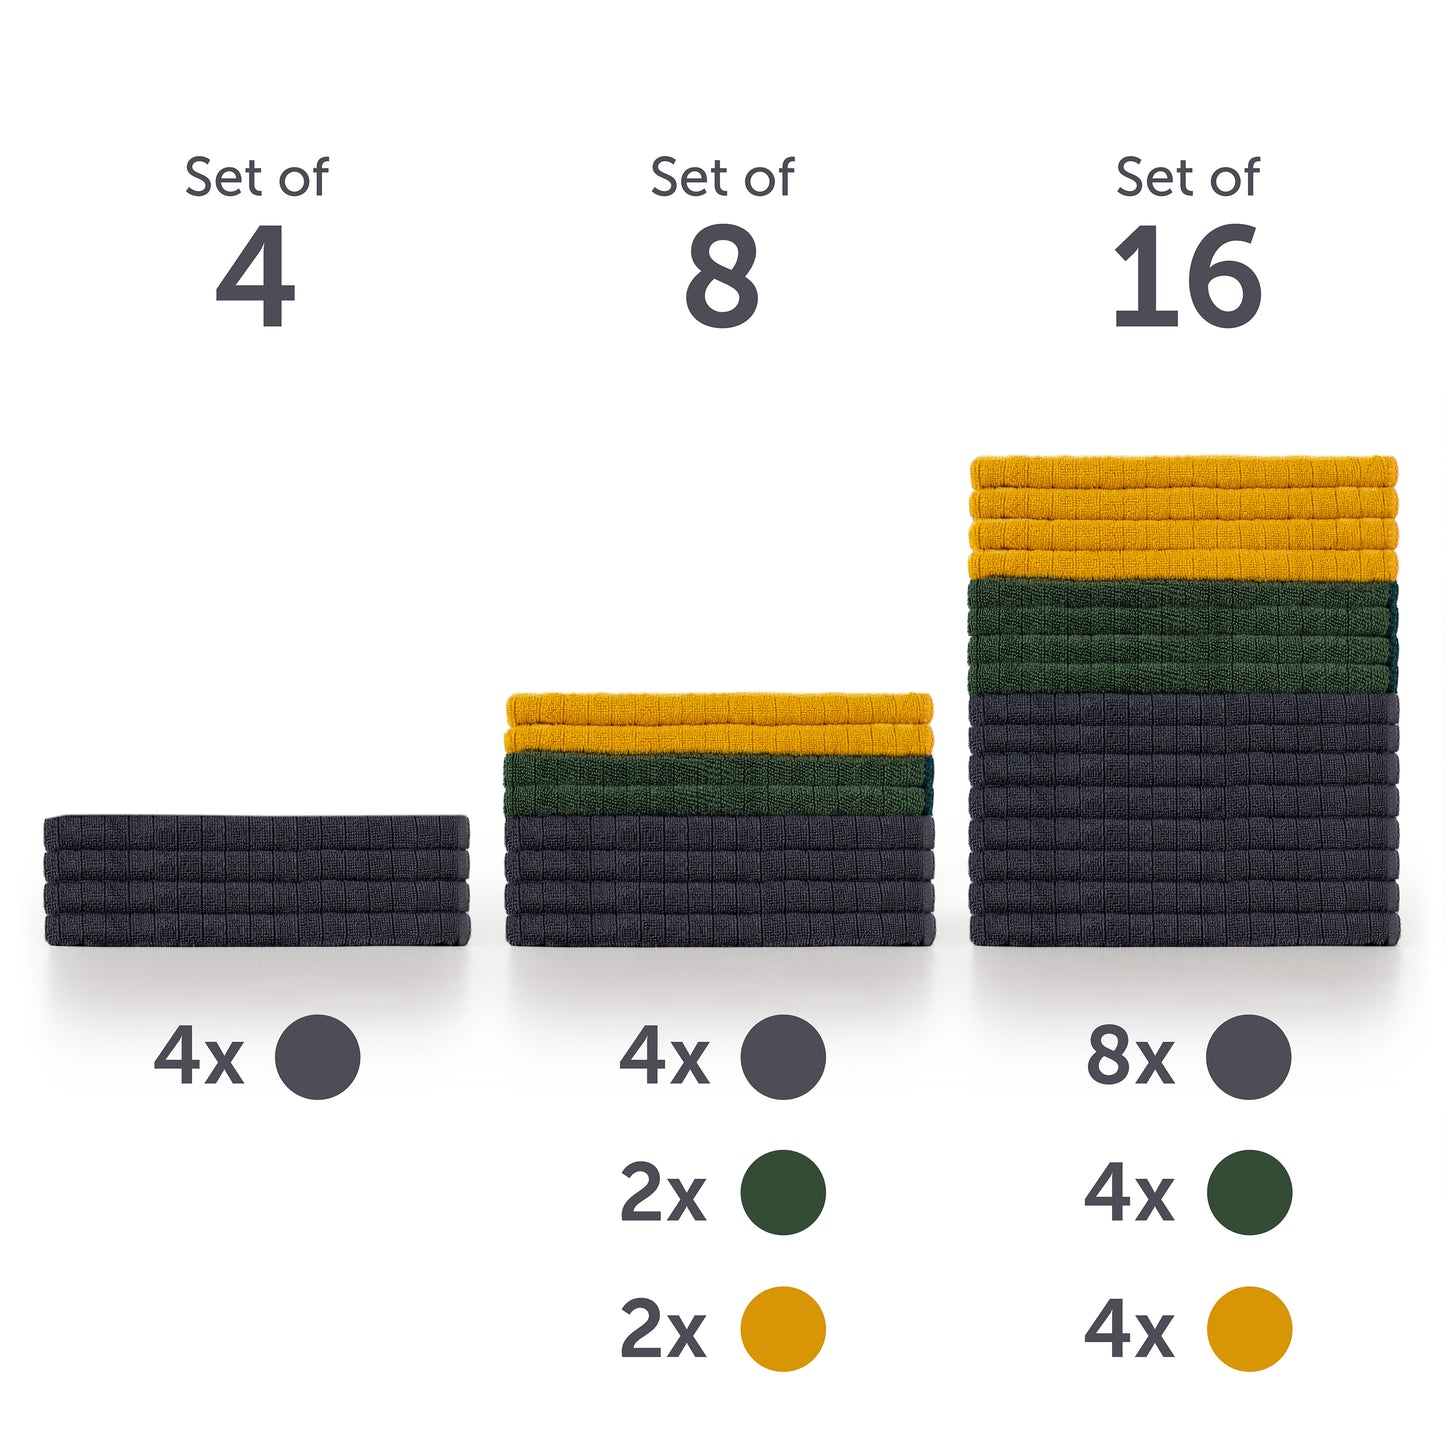 Darstellung von Mikrofasertuch-Sets in unterschiedlichen Mengen mit einer Anzahlmarkierung.